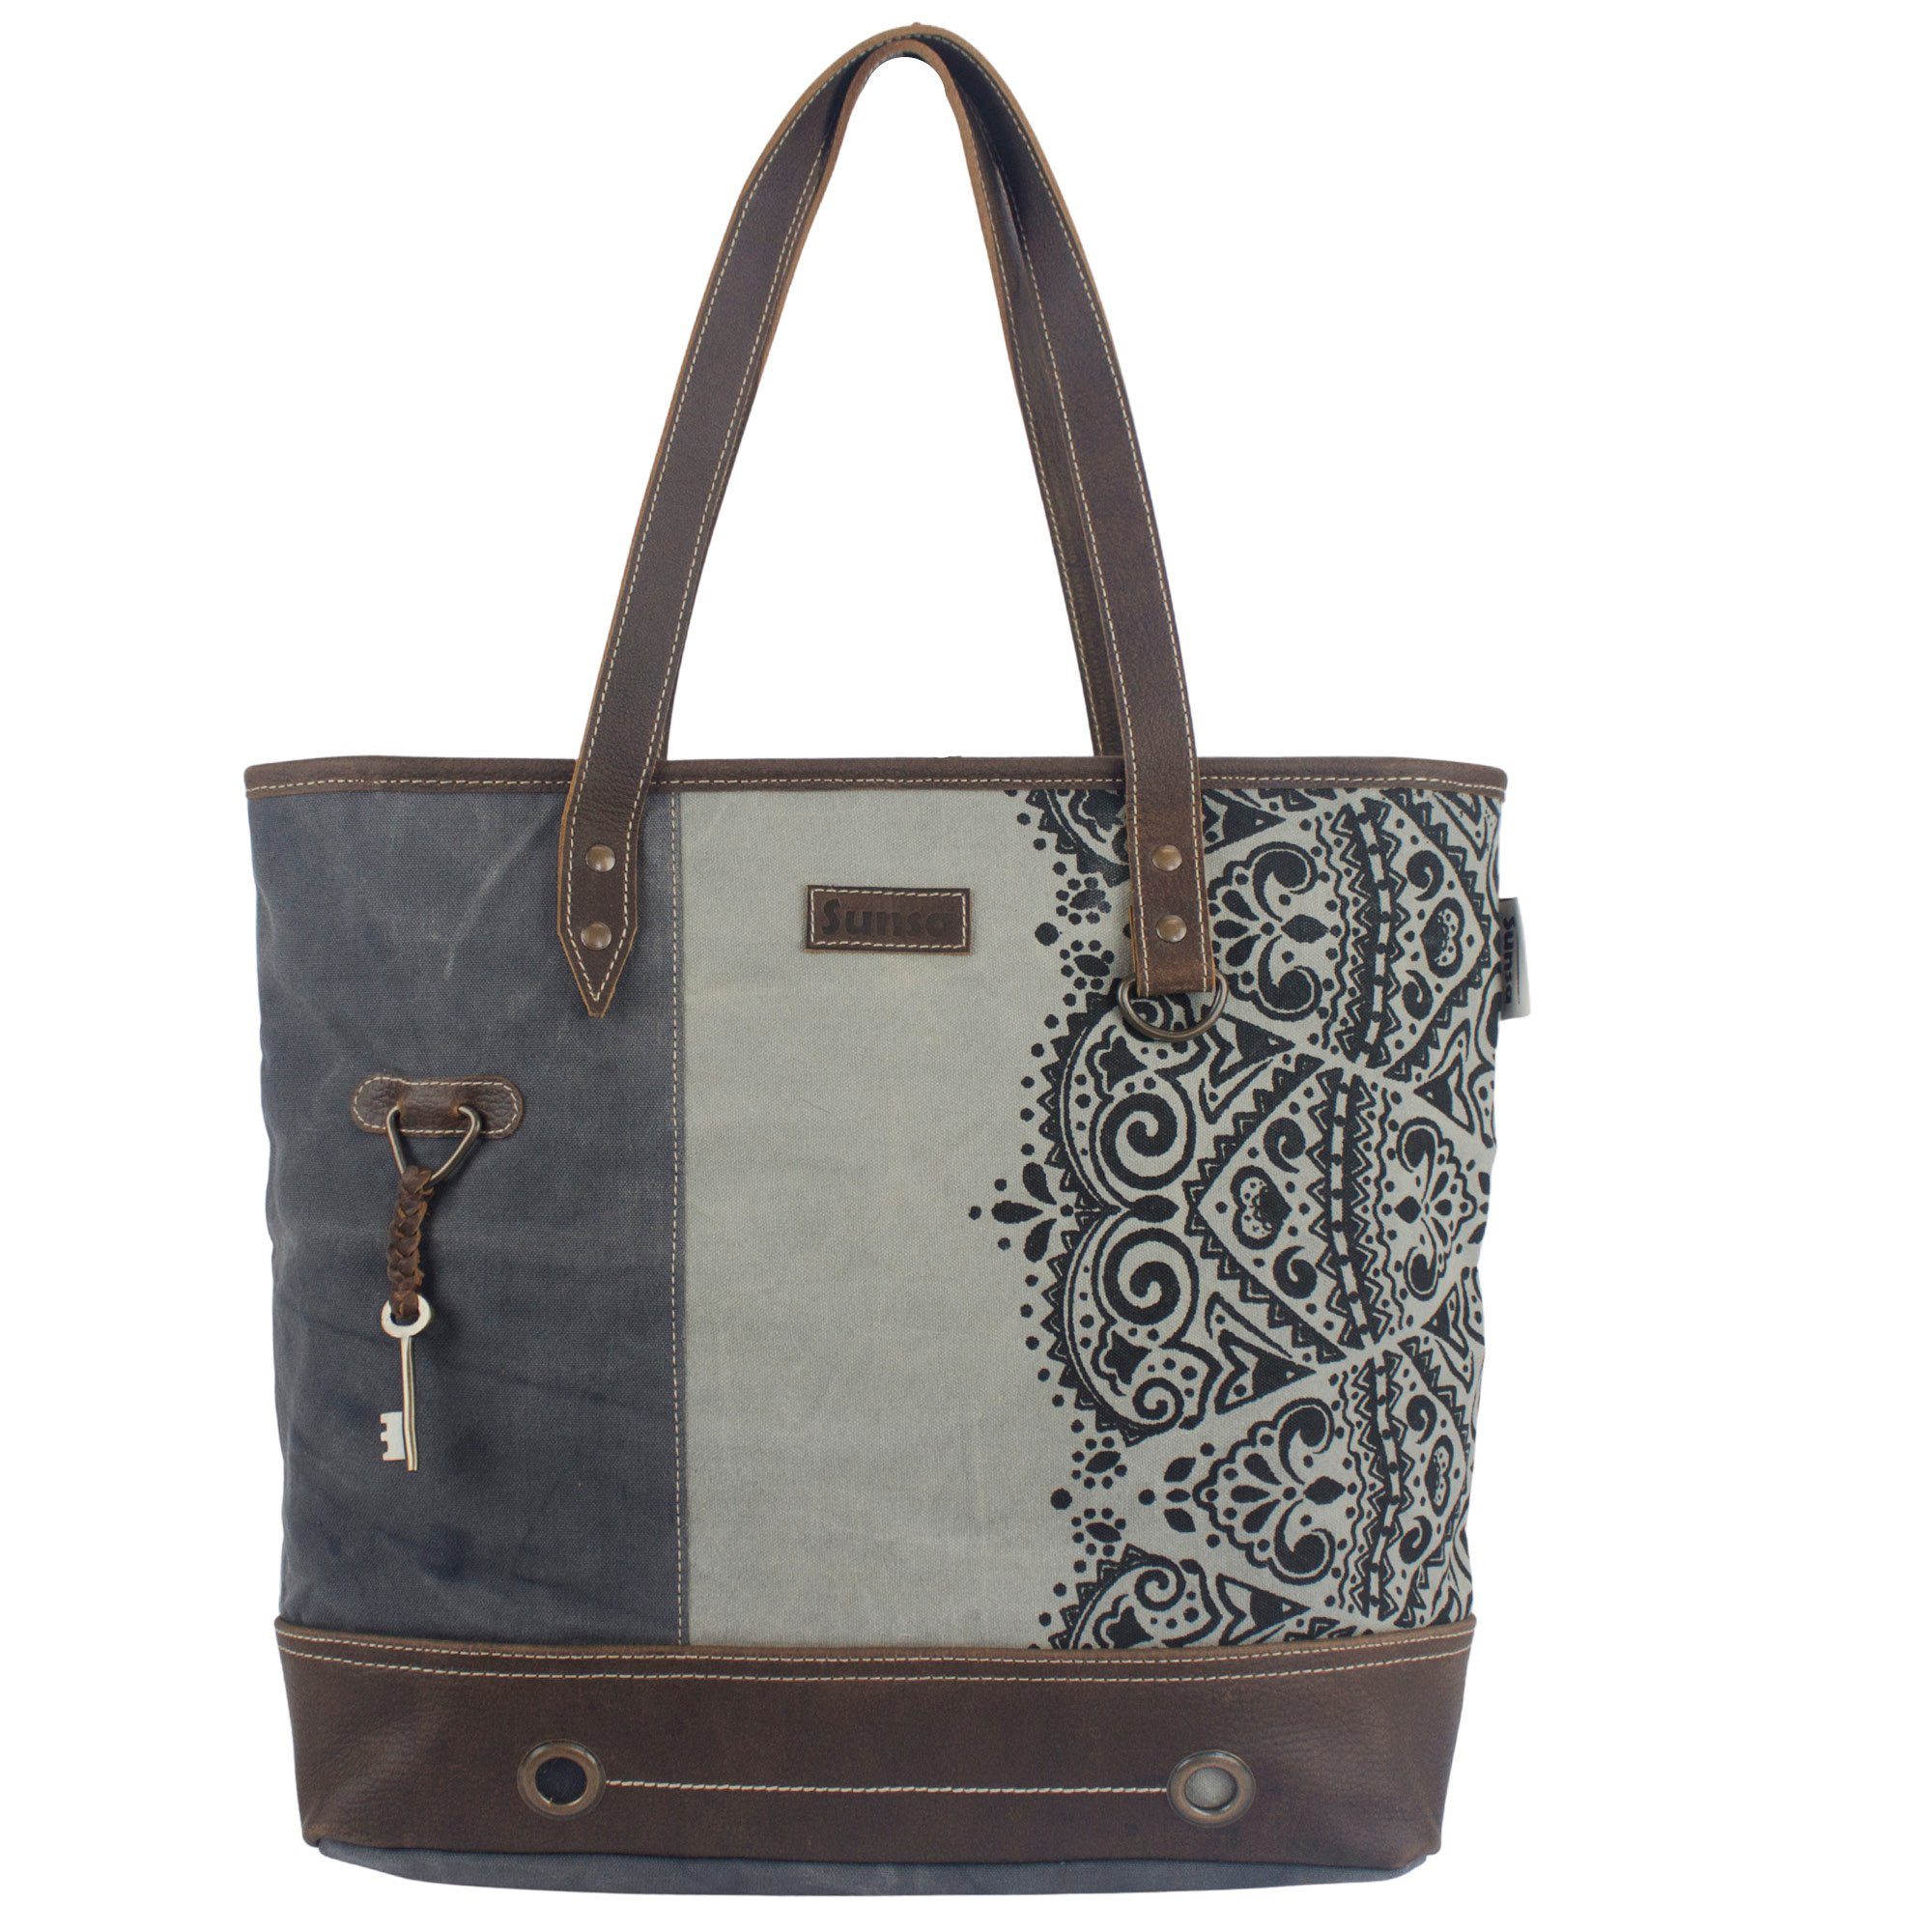 Sunsa Handtasche Große Damen Handtasche. grau/ schwarz Schultertasche mit Mandala Design. Canvas Tote Tasche model 52507